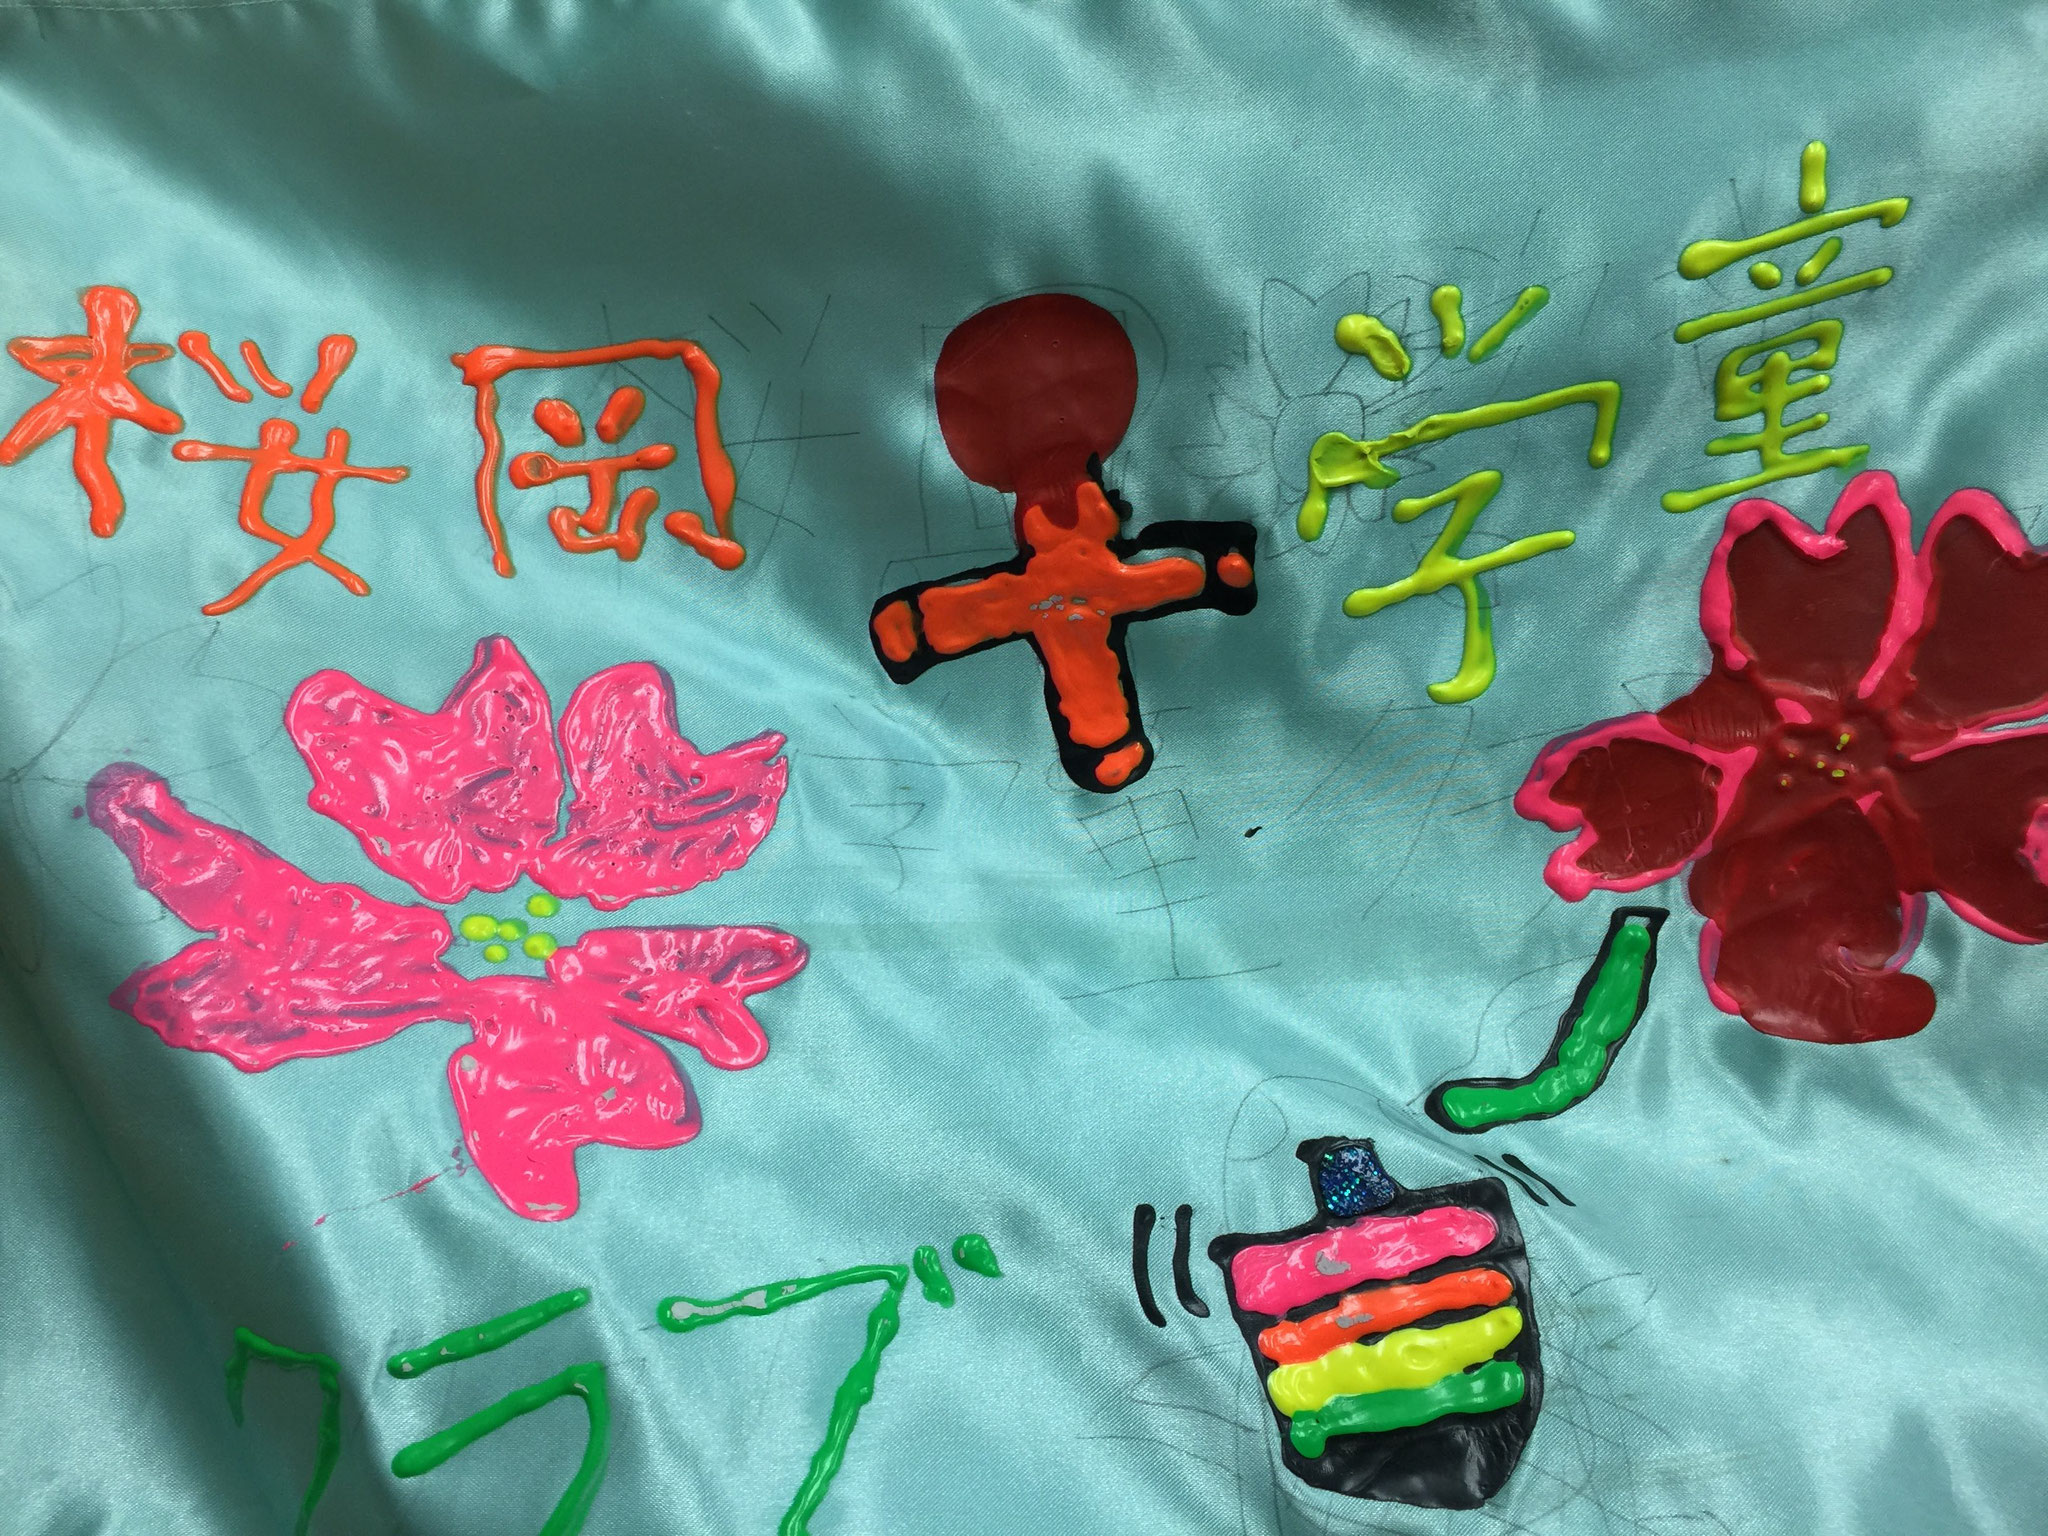 けん玉とコマがモチーフの桜岡学童クラブの旗